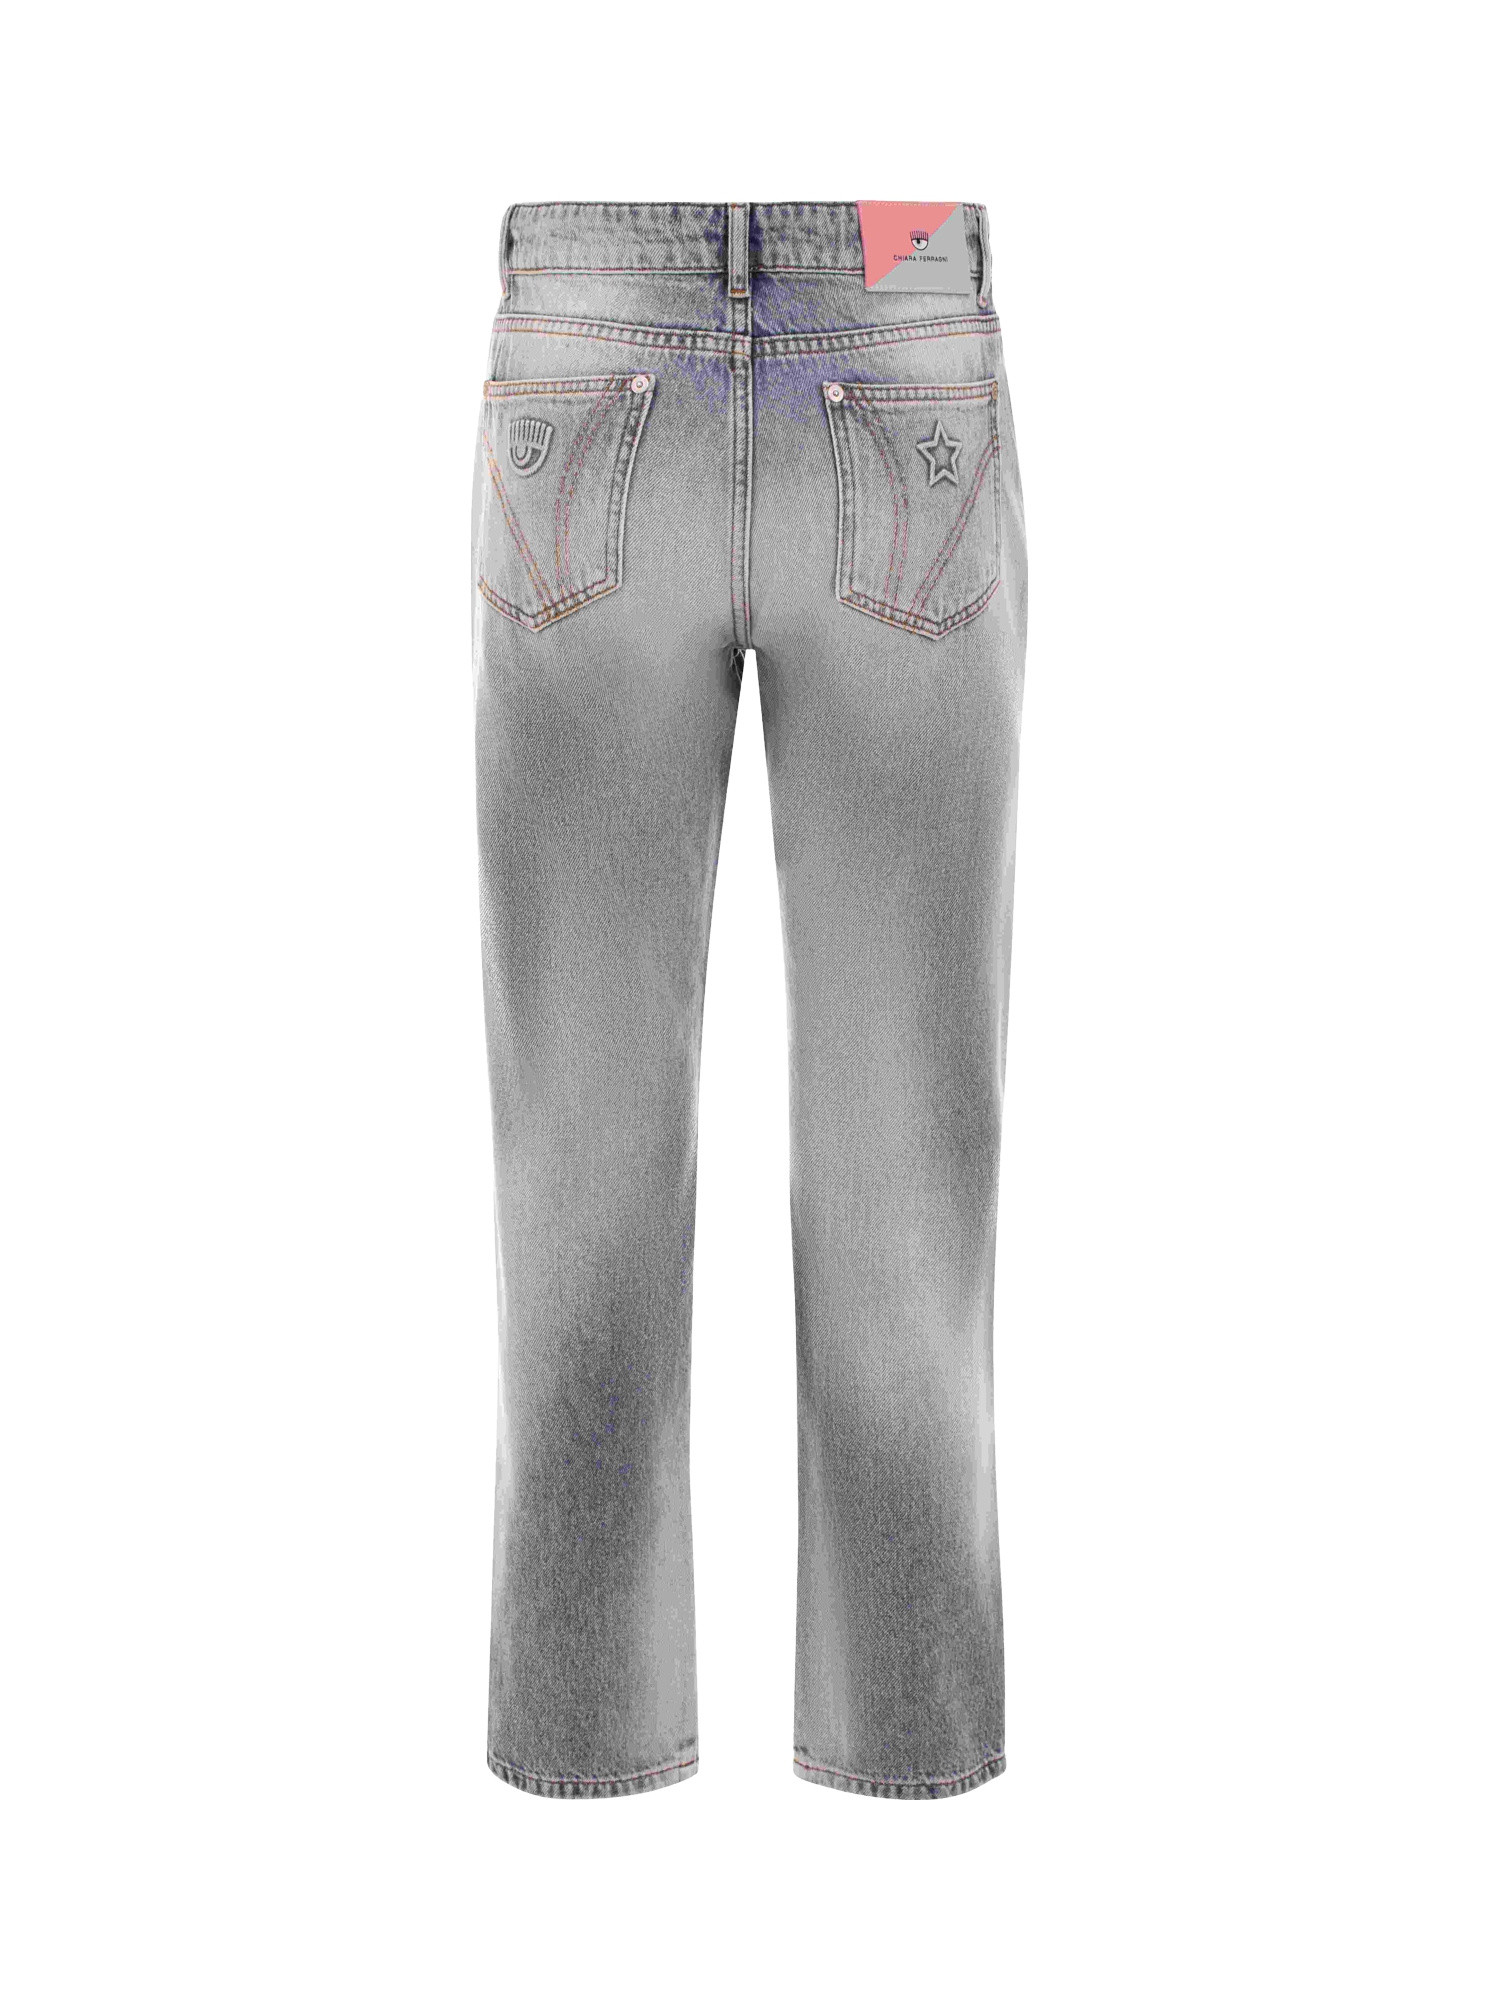 Chiara Ferragni - 5-pocket jeans, Grey, large image number 1